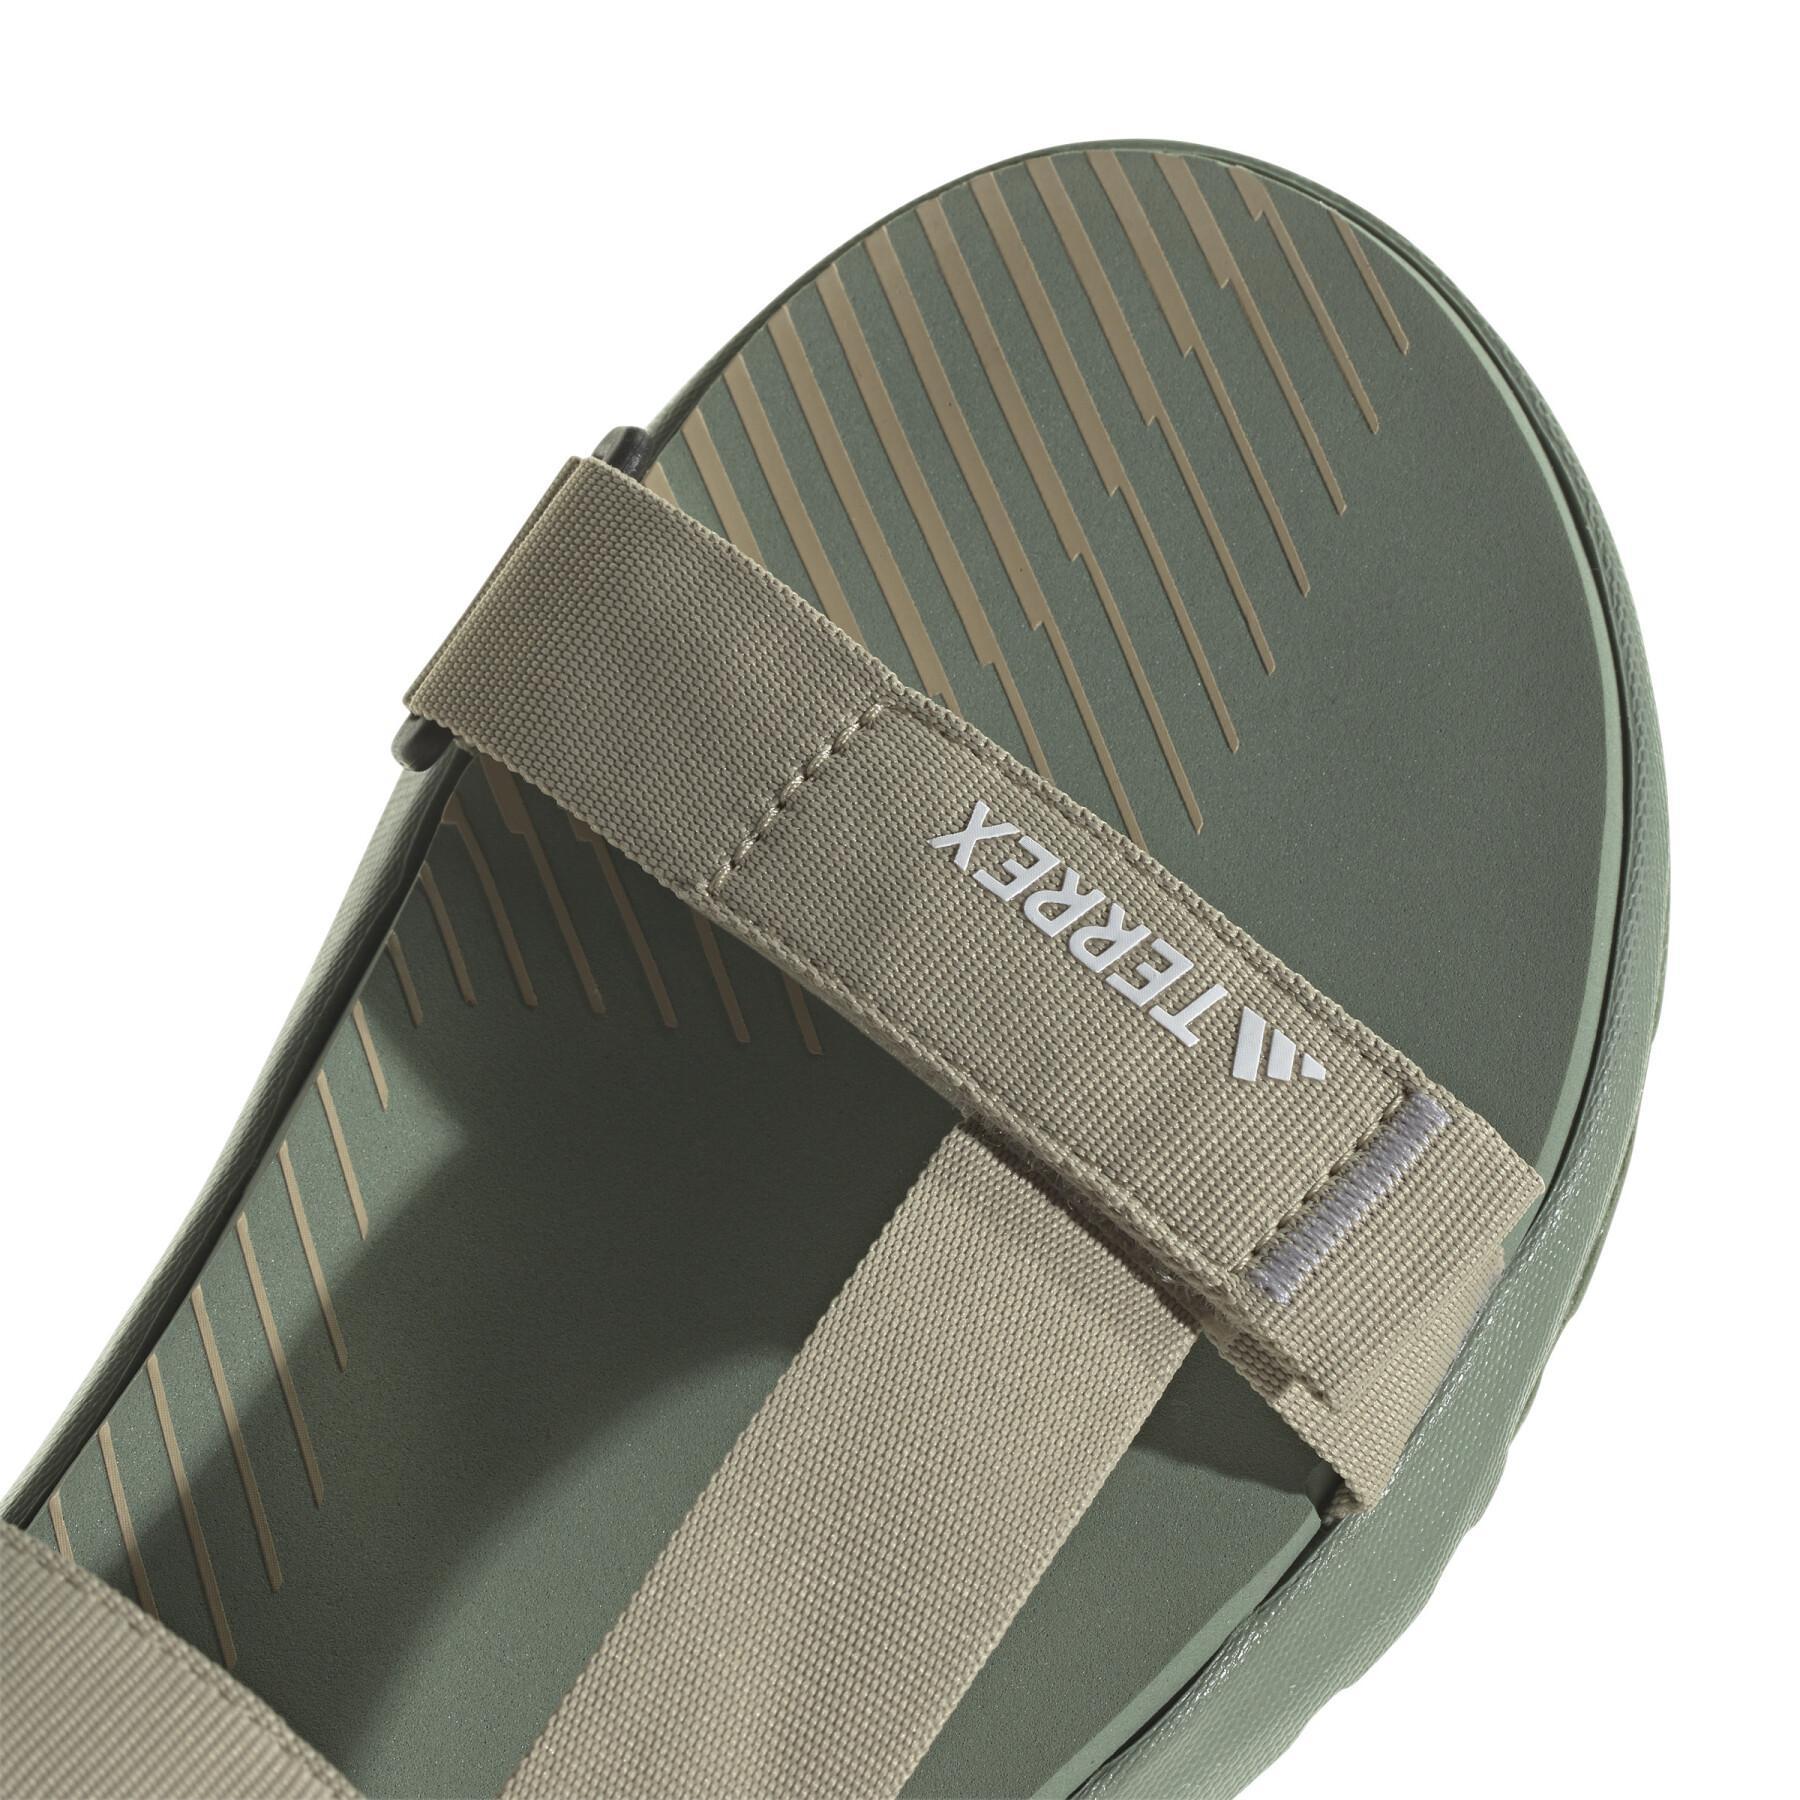 Sandali leggeri adidas Terrex Hydroterra